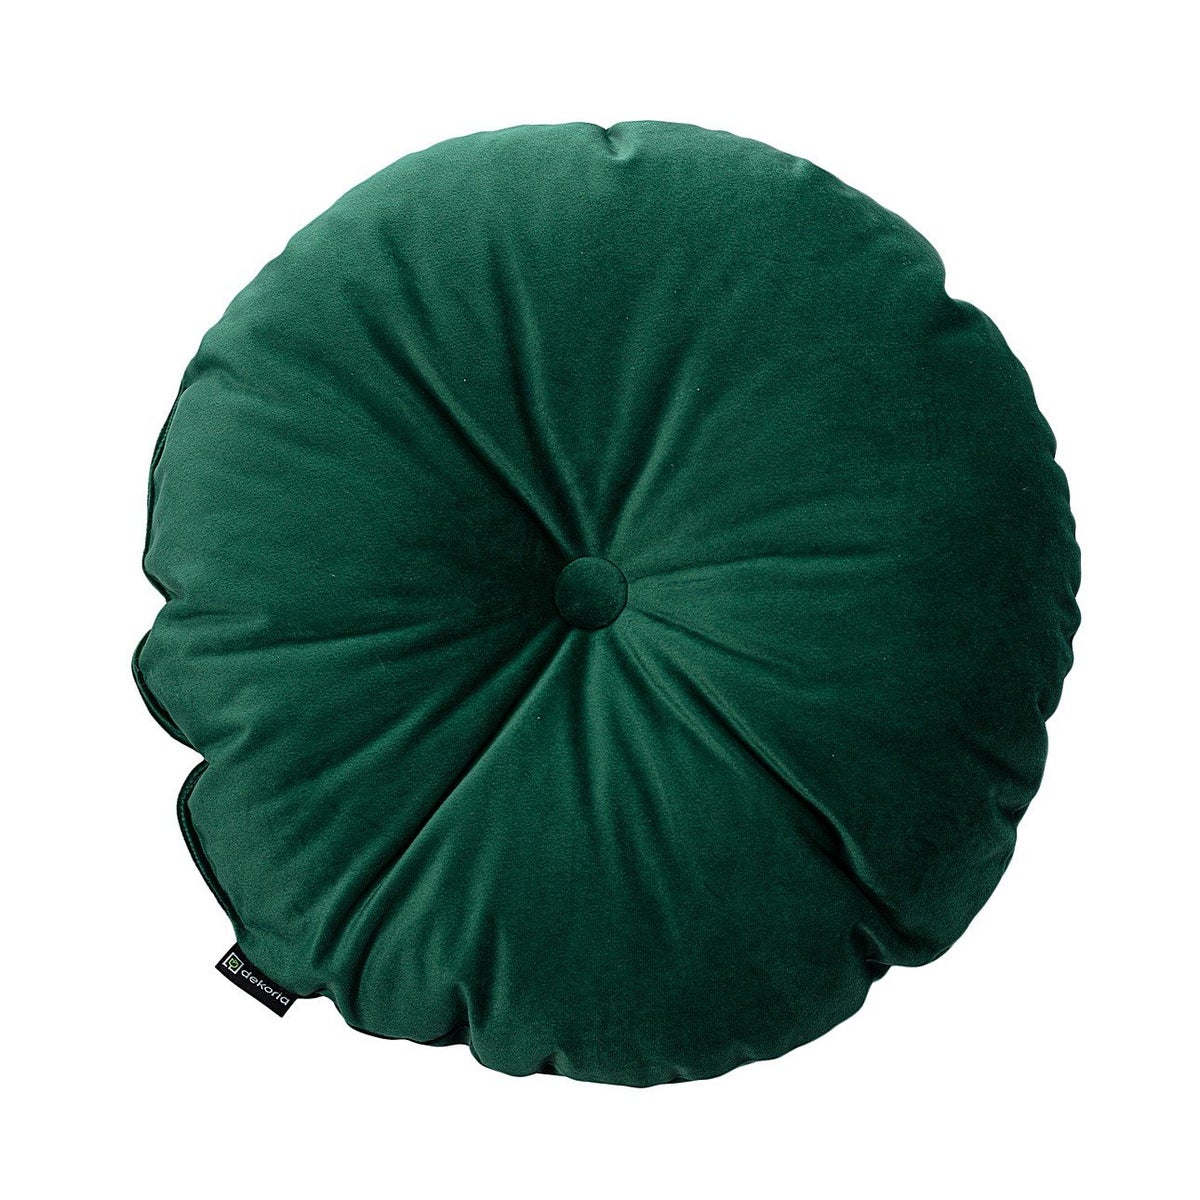 KISSEN Velvet rund, grün, 37cm